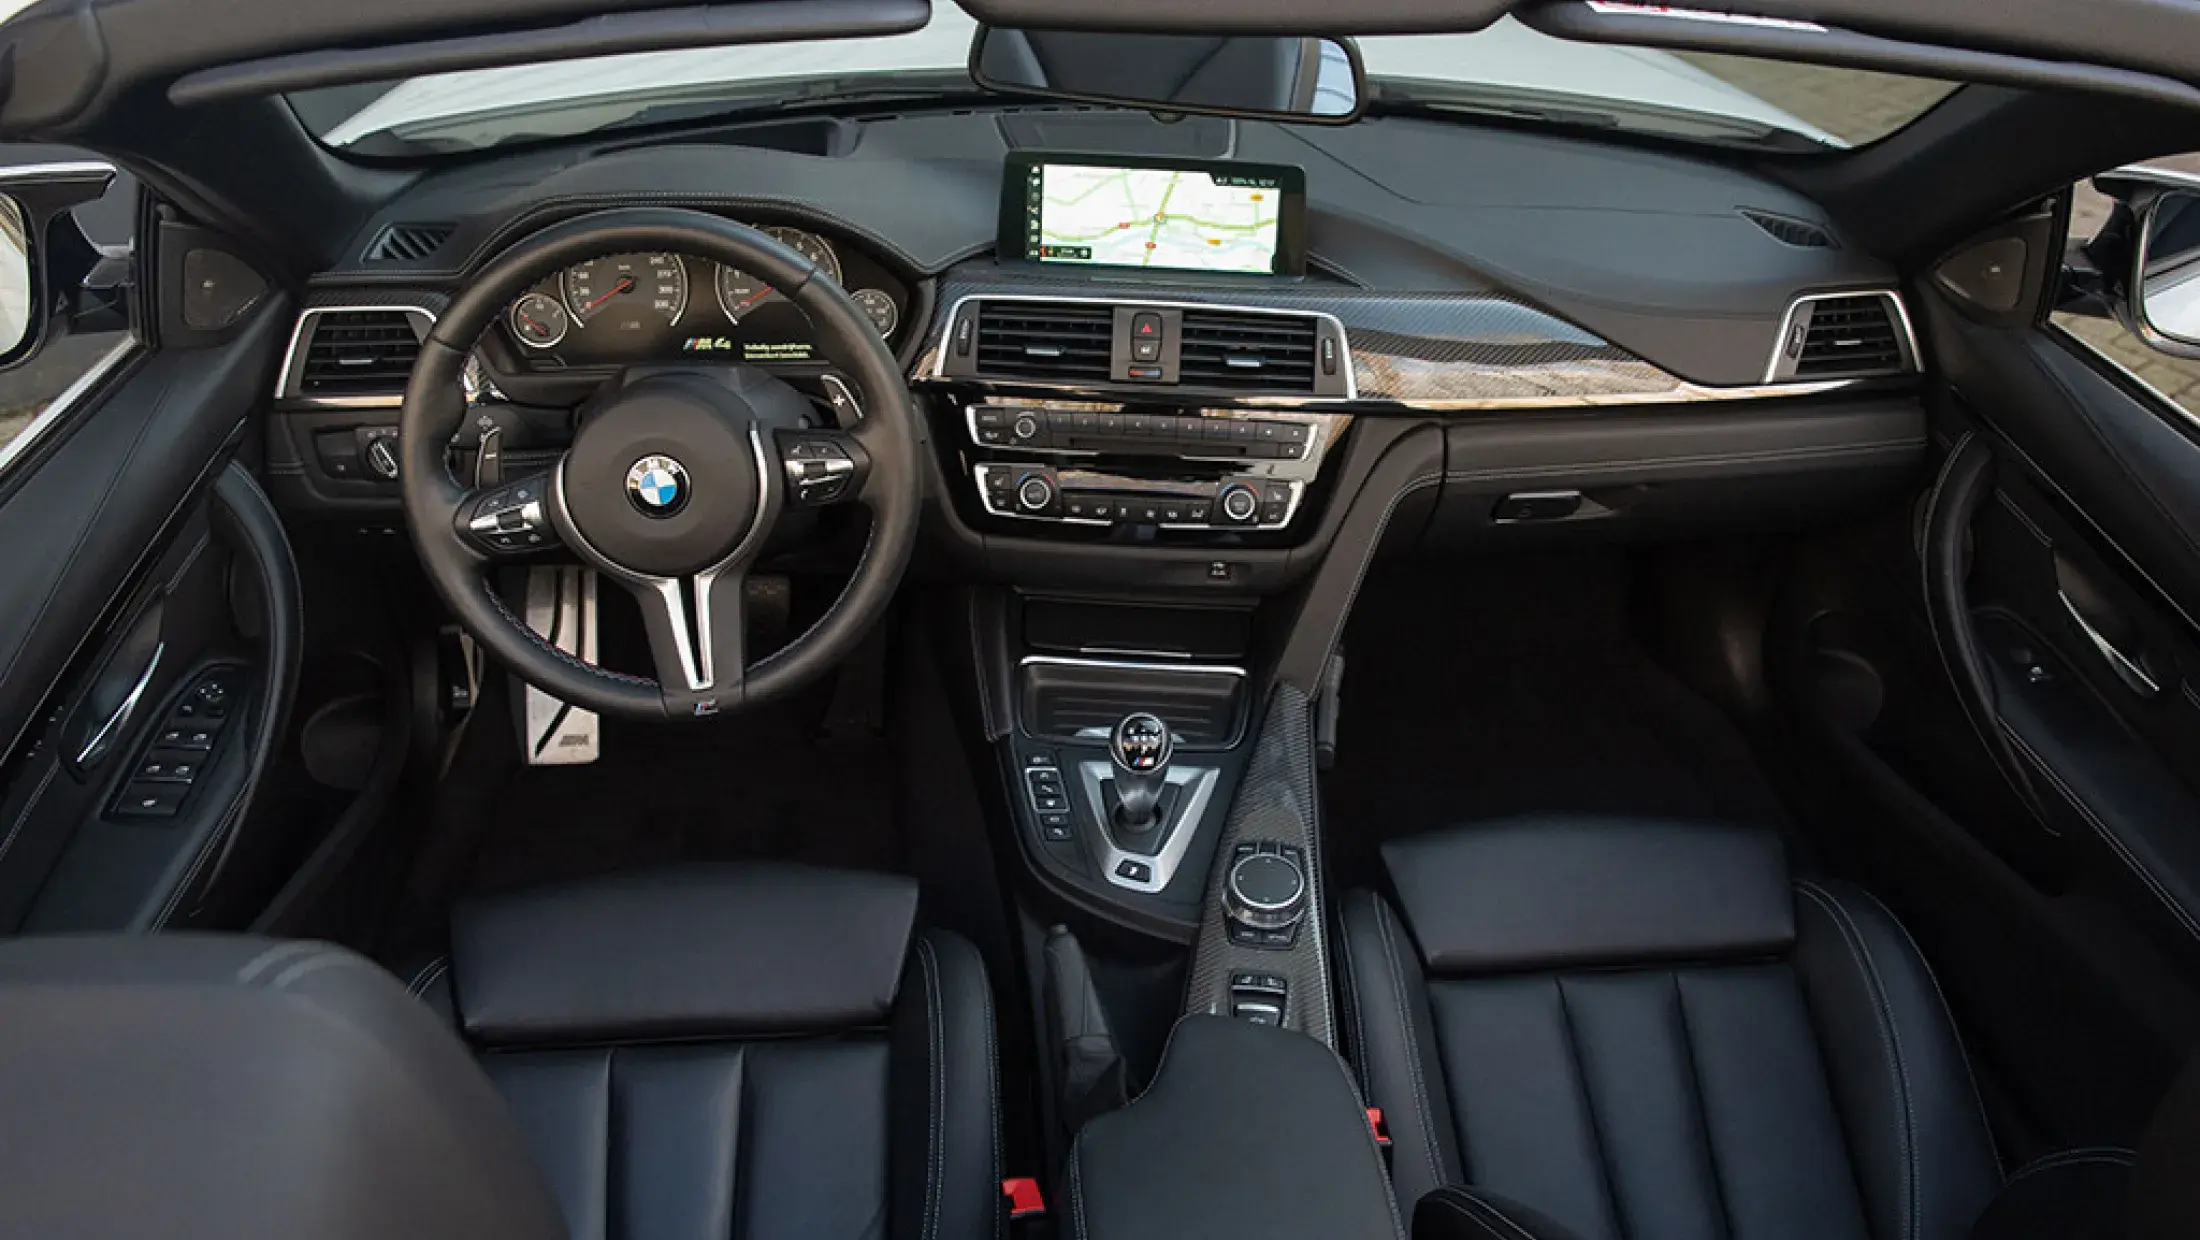 BMW M4 Competition Cabrio F83 Mineral White Metallic Volleder merino schwarz M Drivers package